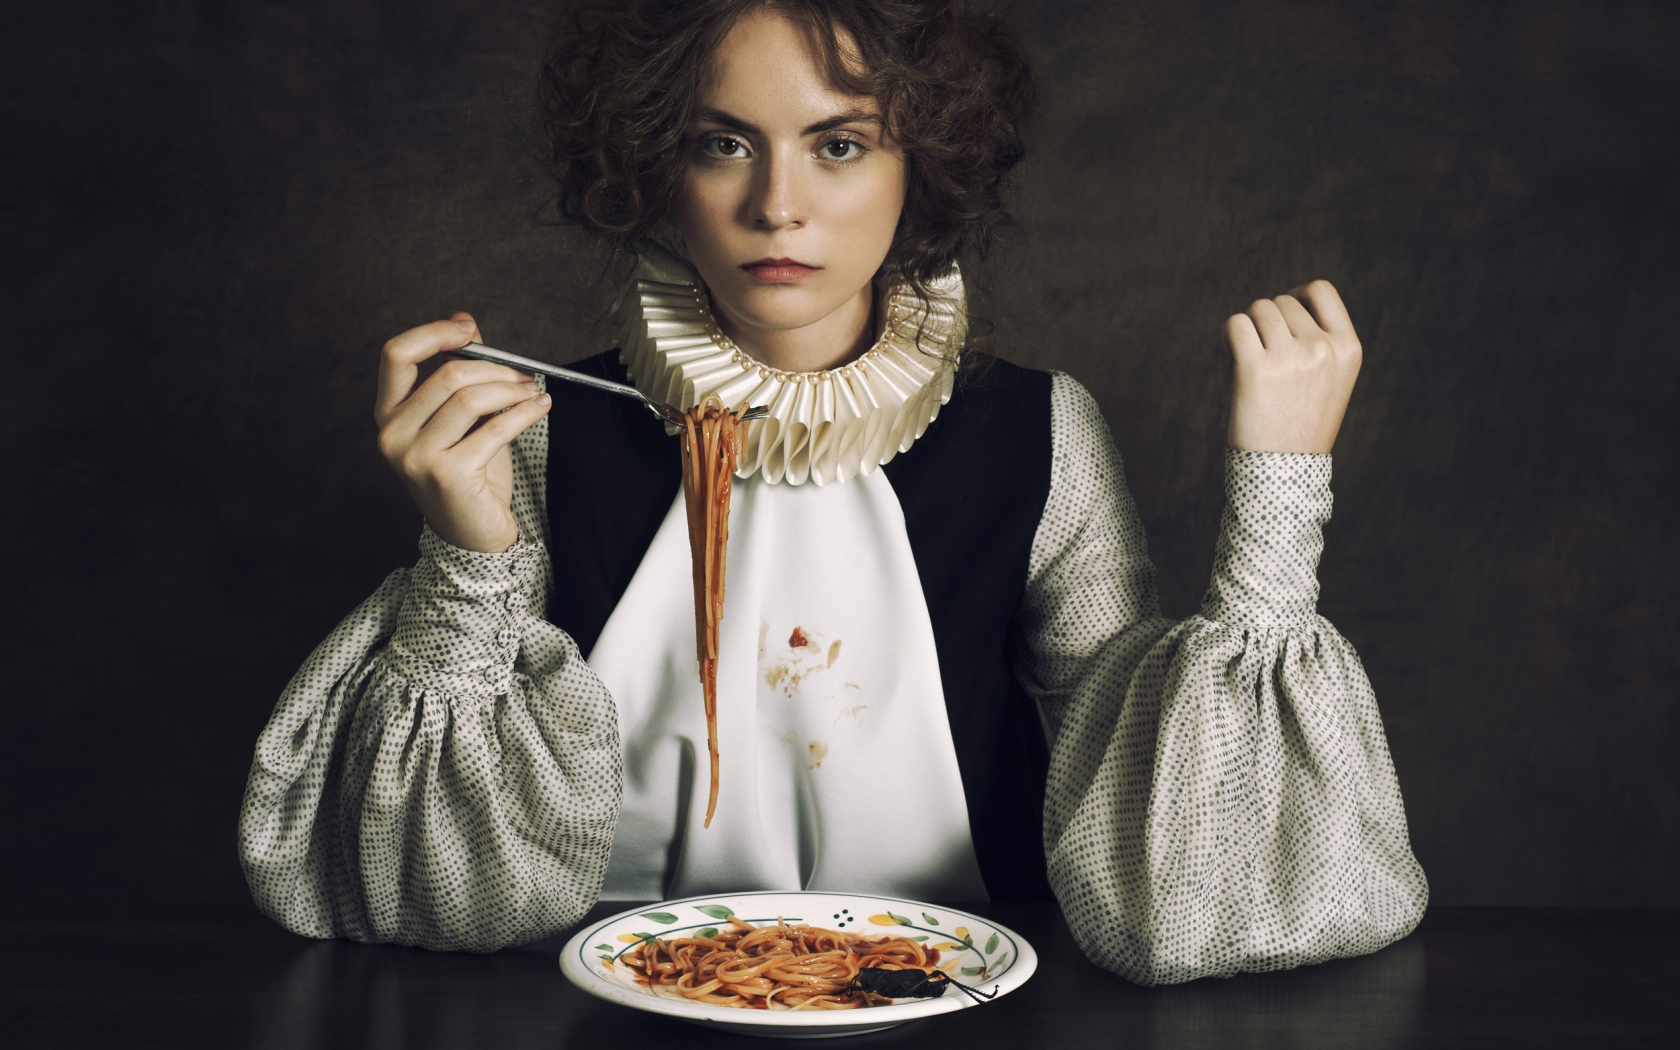 спагетти, обед, взгляд, девушка, юмор, ирония, портрет